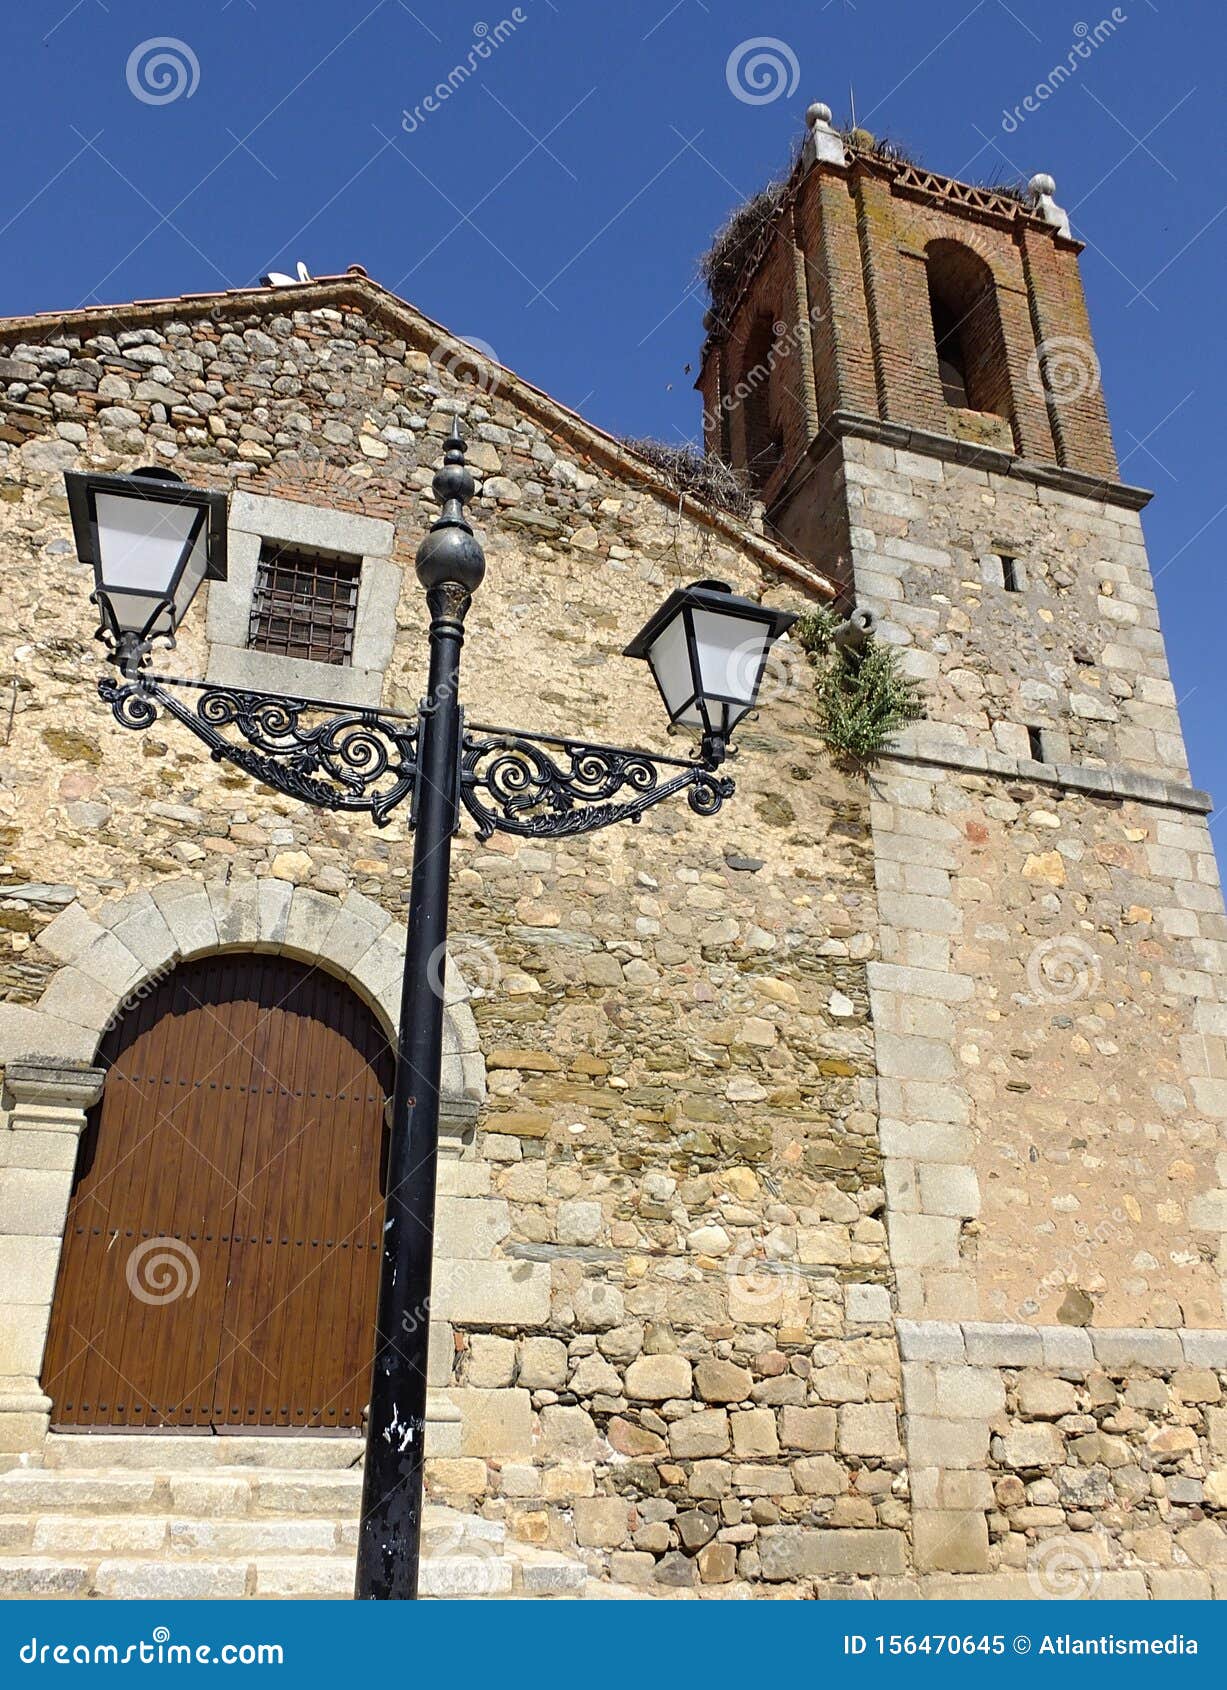 san bartolome church in la coronada, badajoz - spain